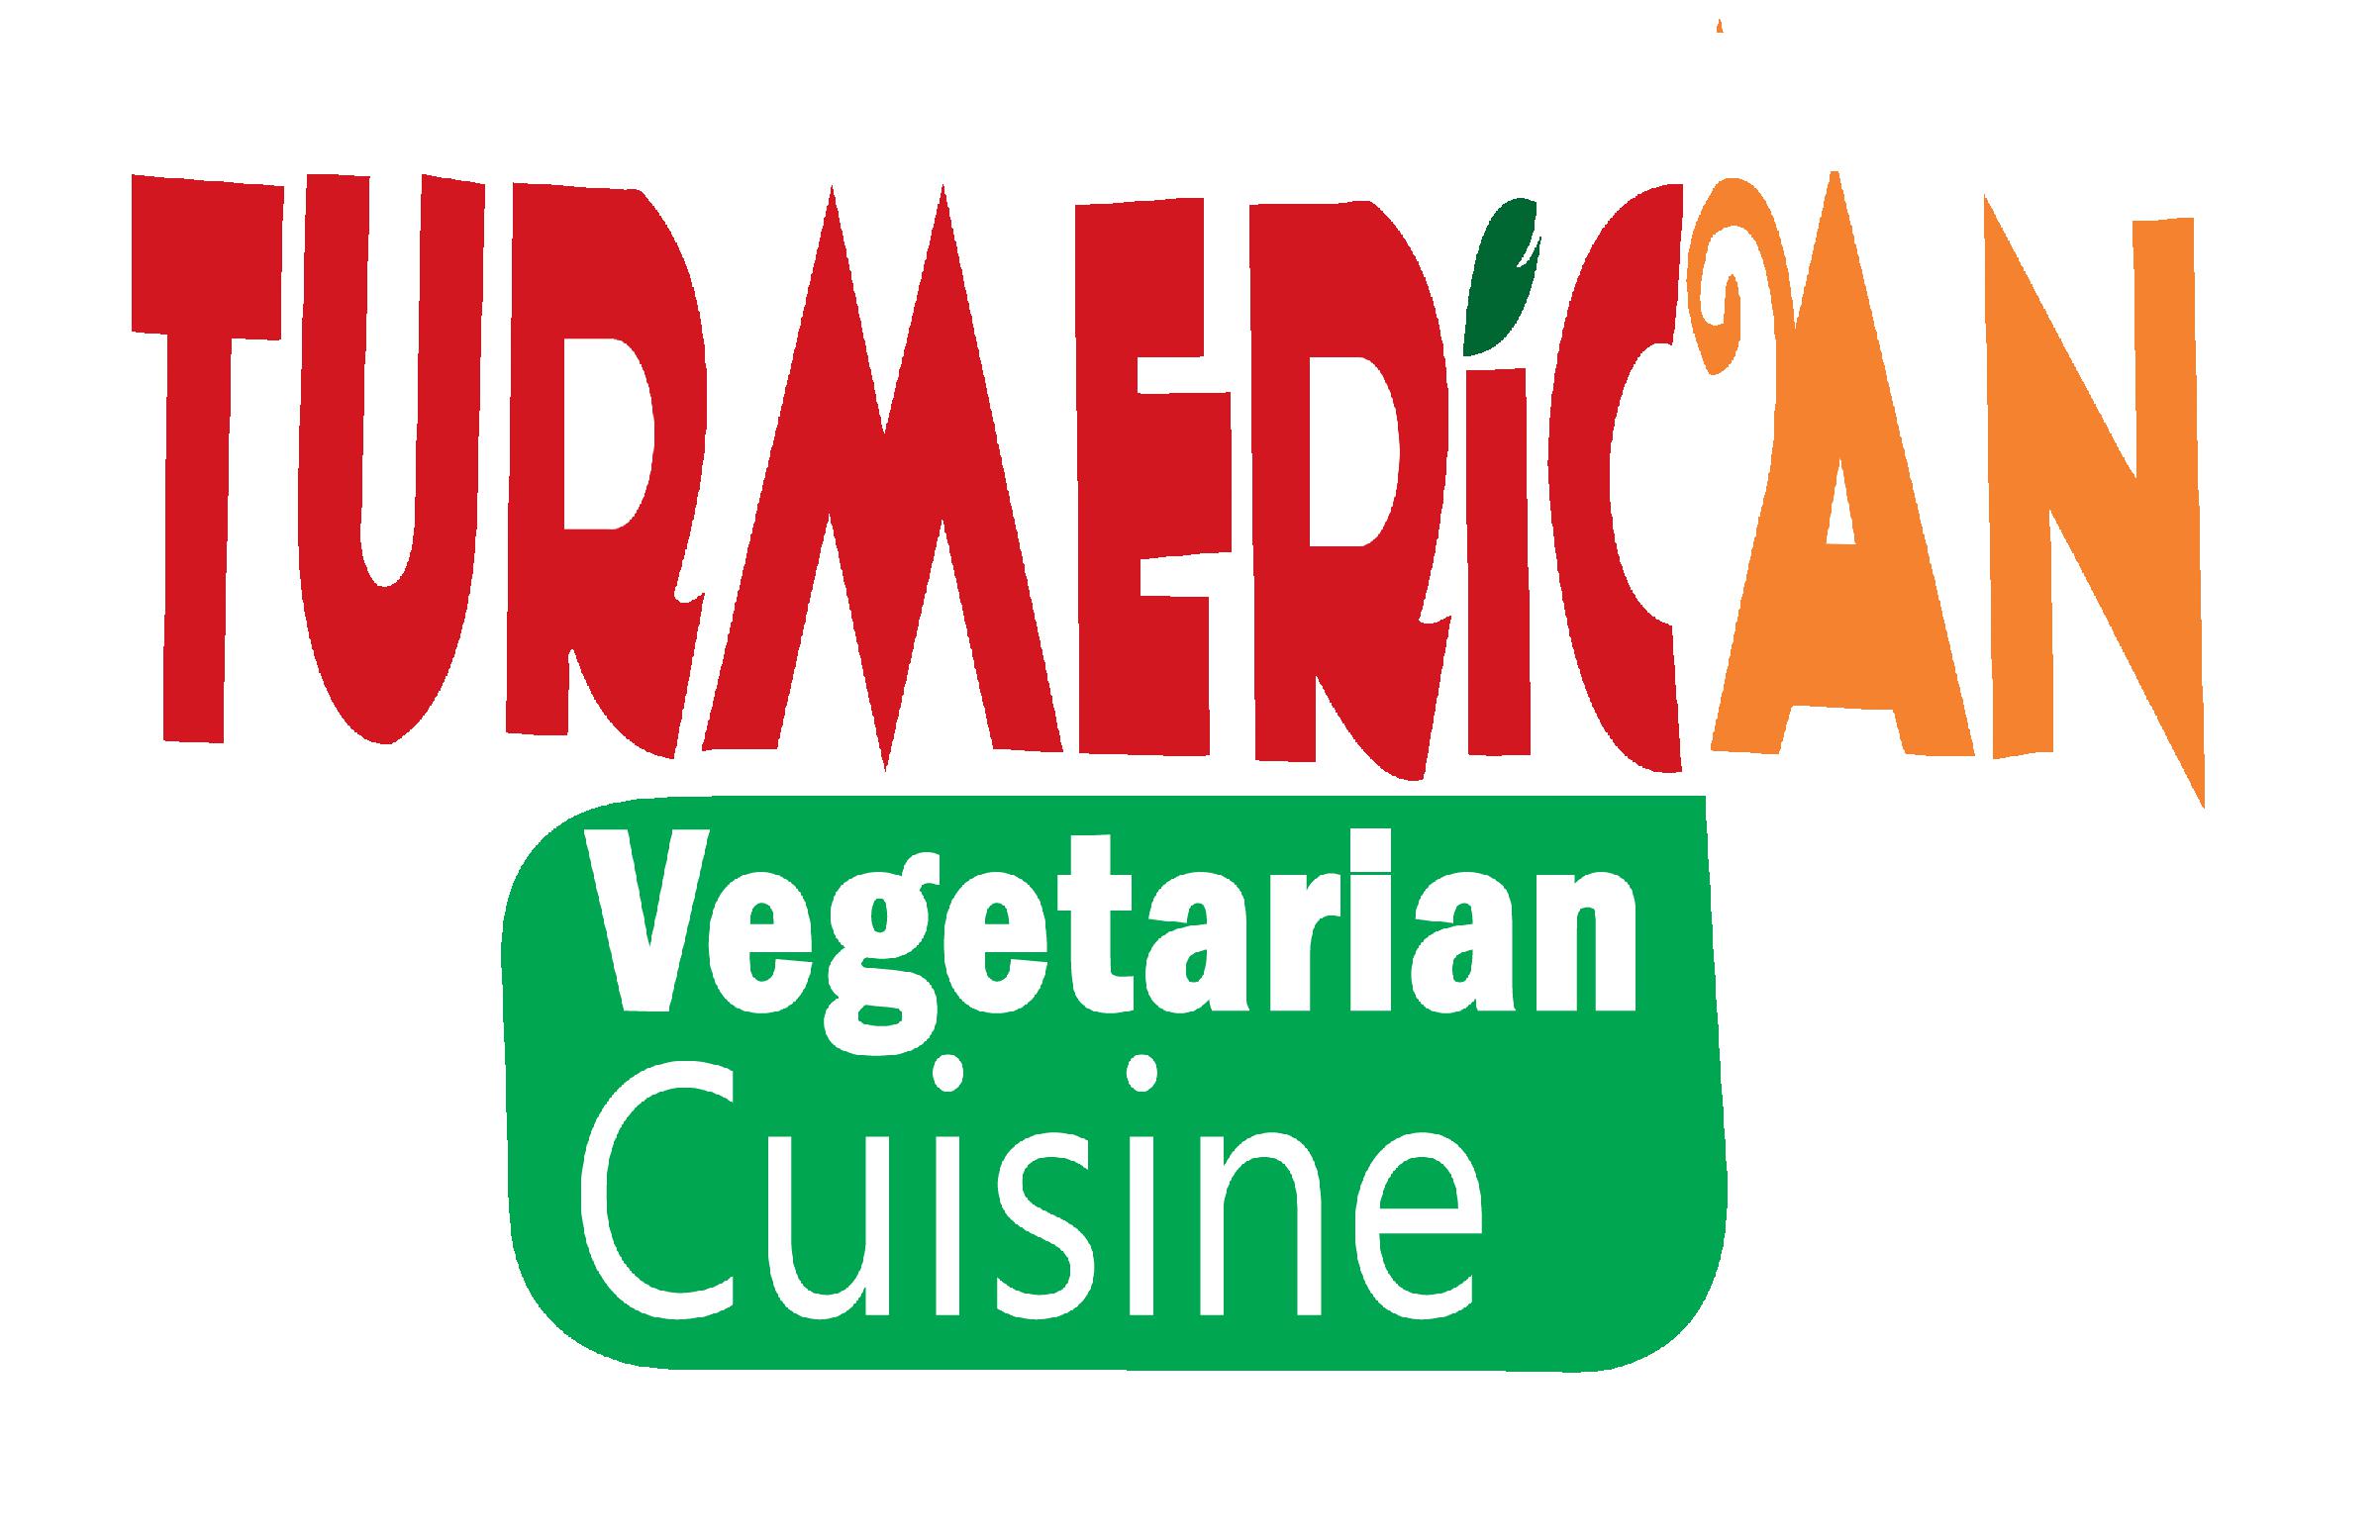 Turmerican Vegetarian Cuisine